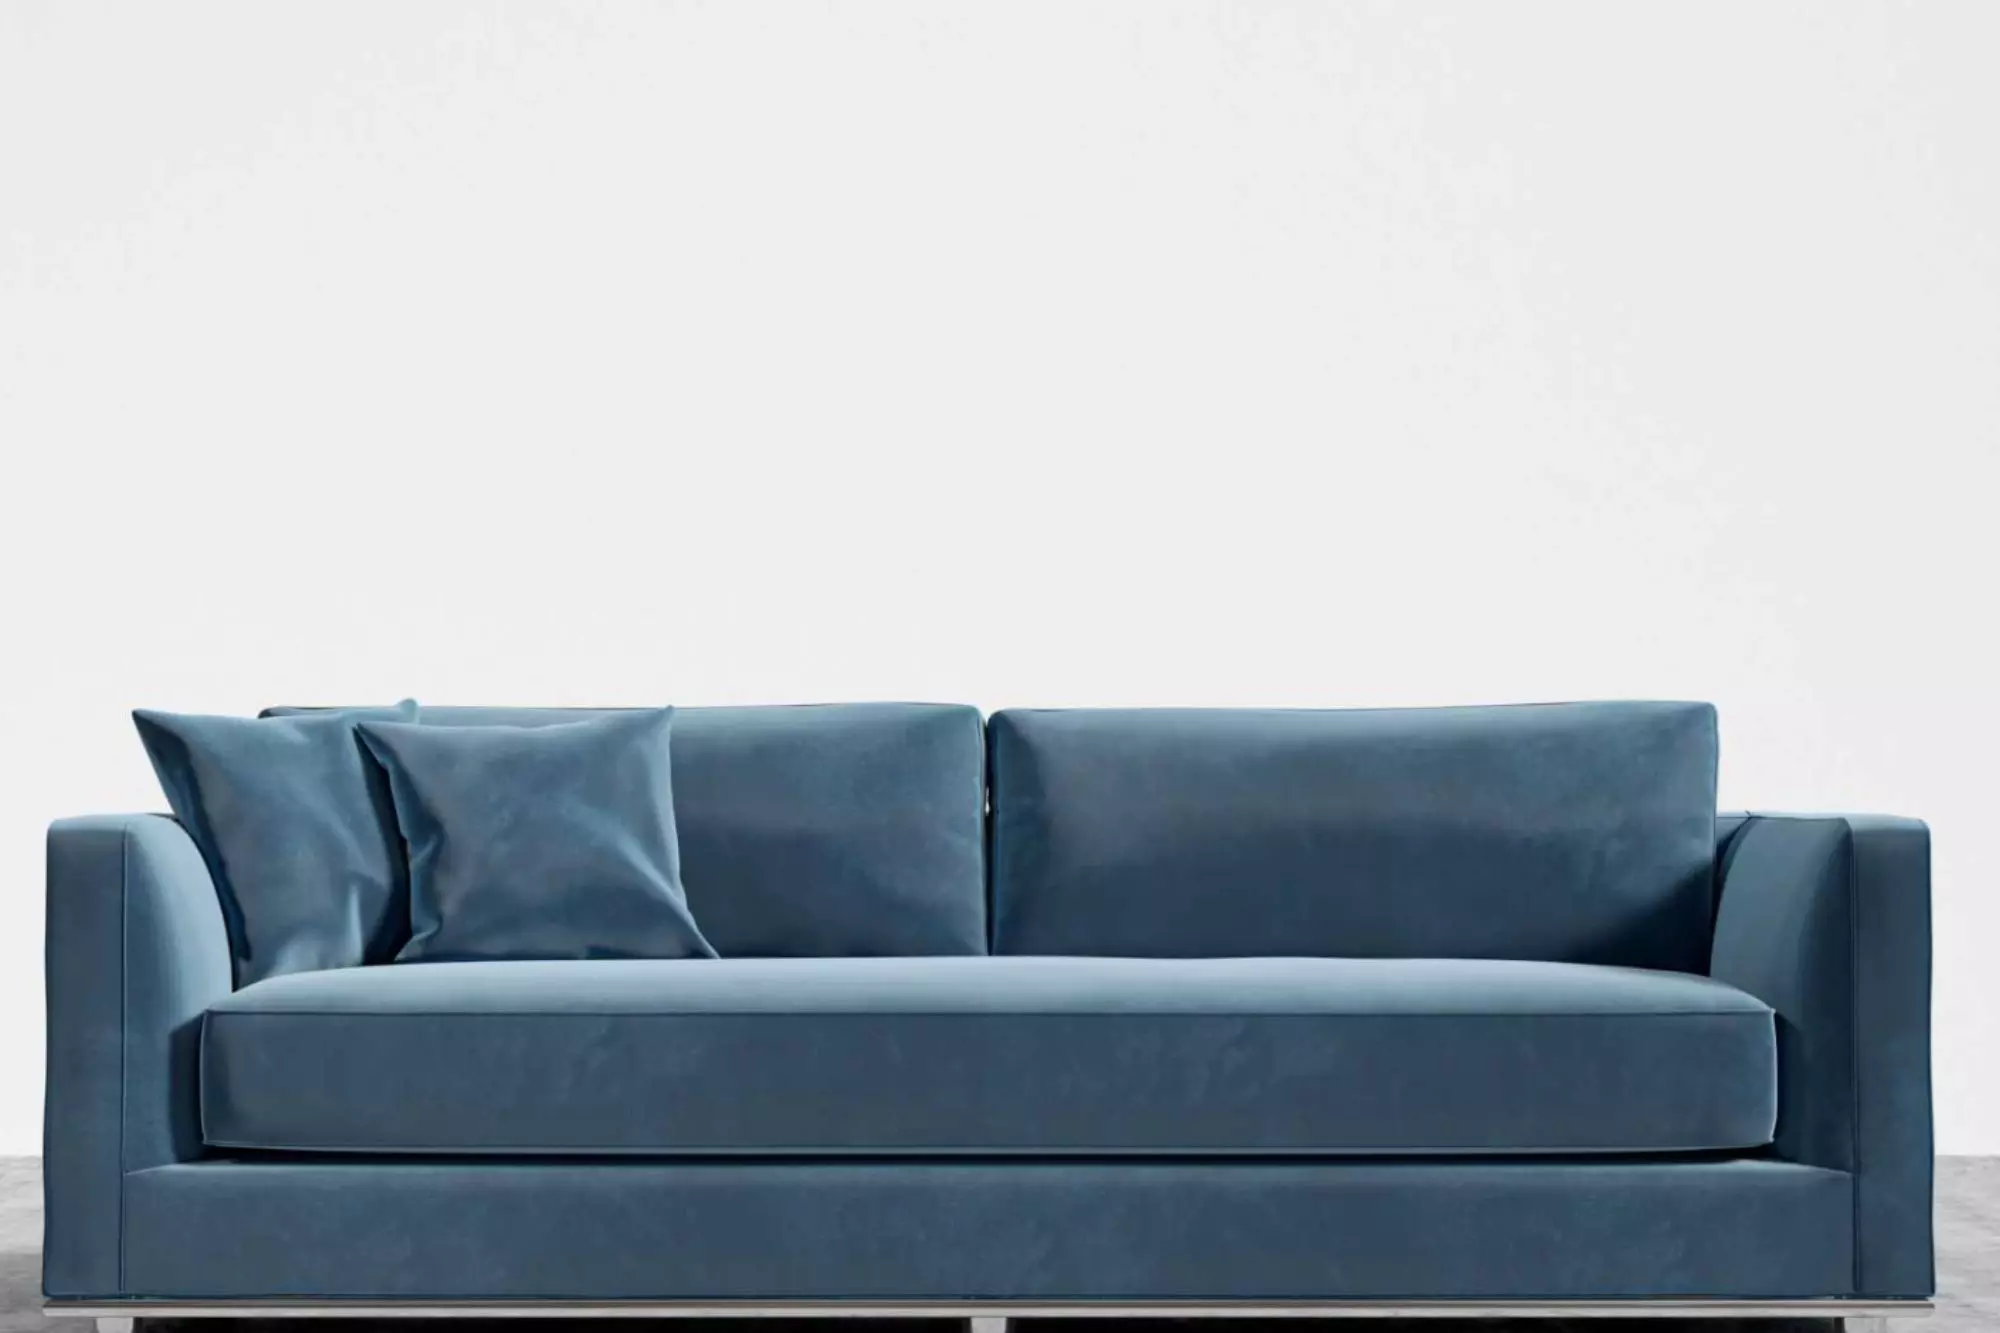 A blue velvet sofa sleeper